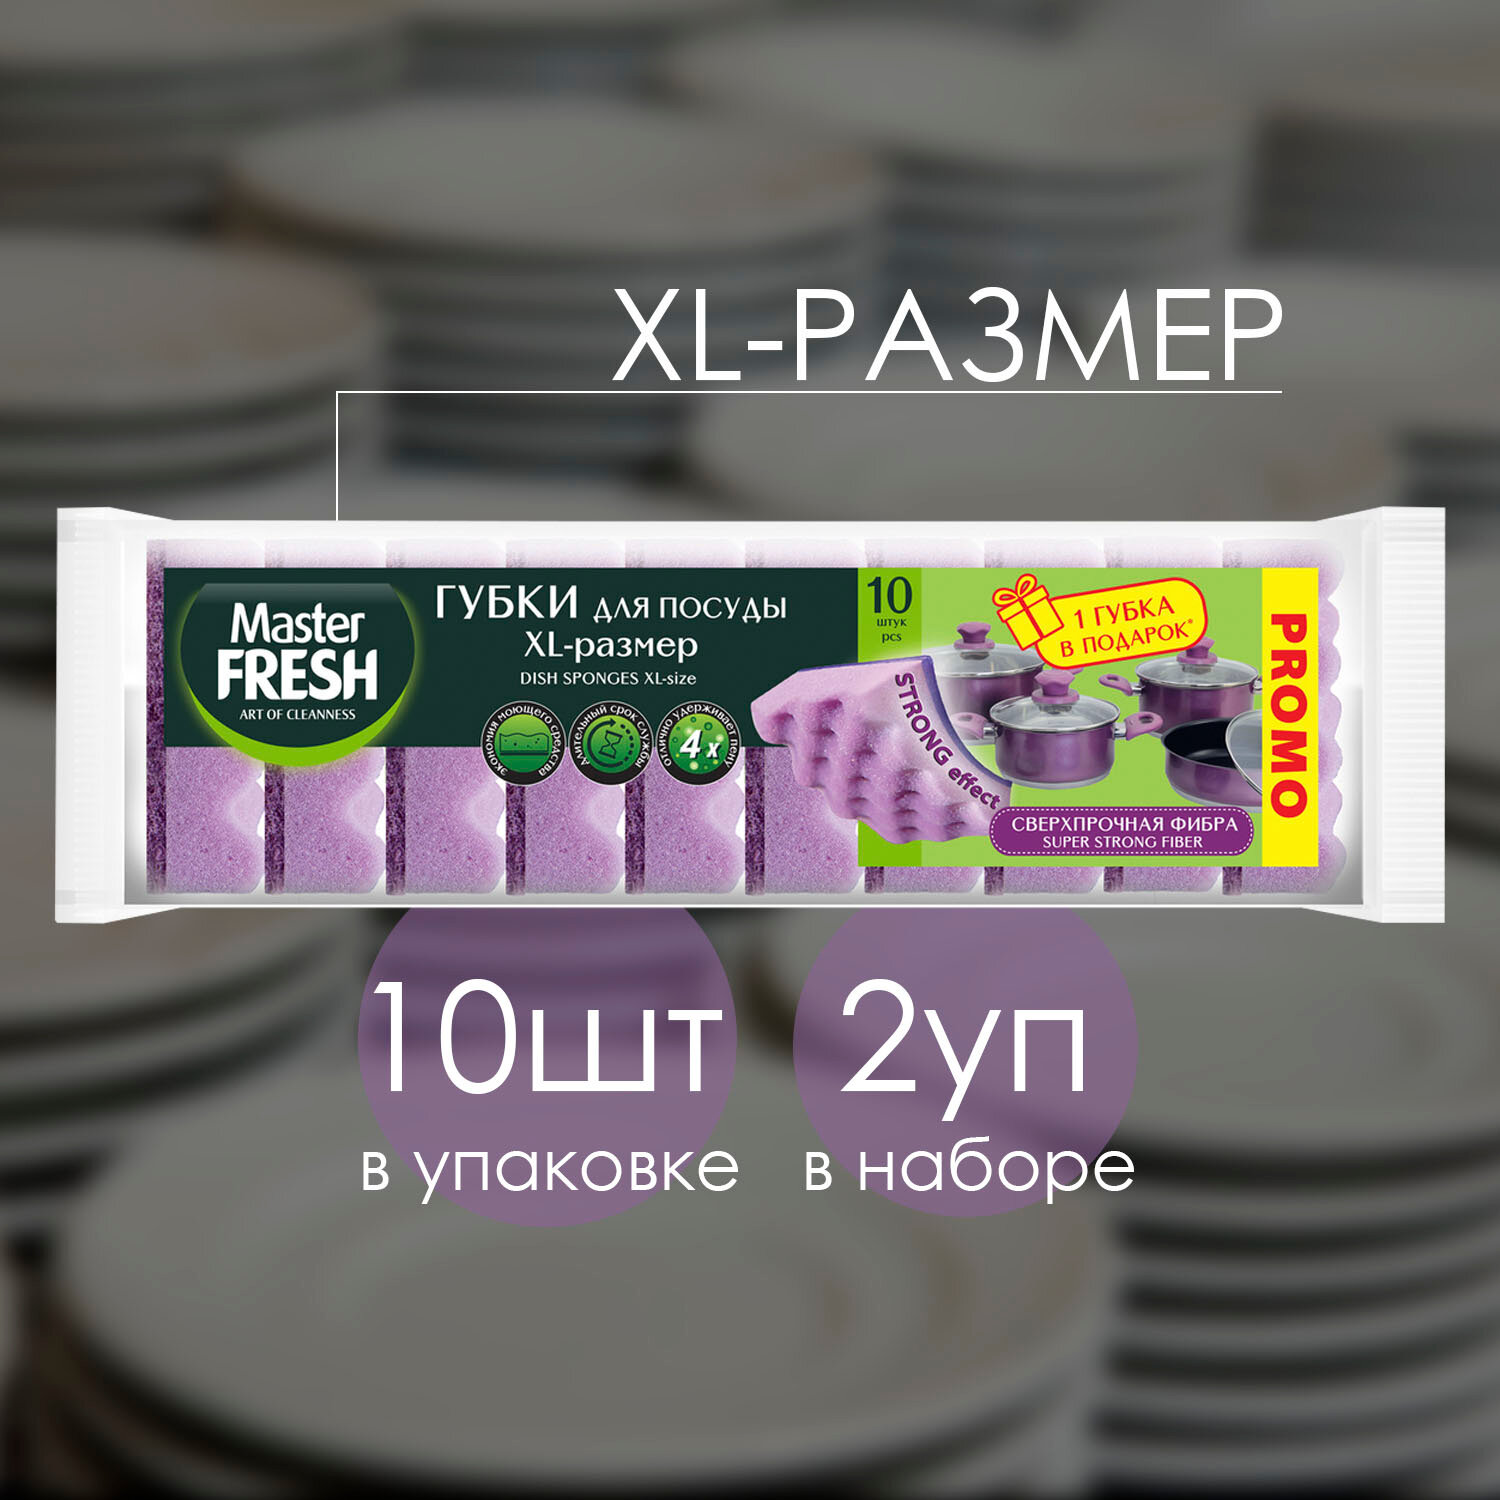 Губки для мытья посуды Master Fresh XL размер STRONG effect 9+1 губка В подарок 10шт (2 шт)